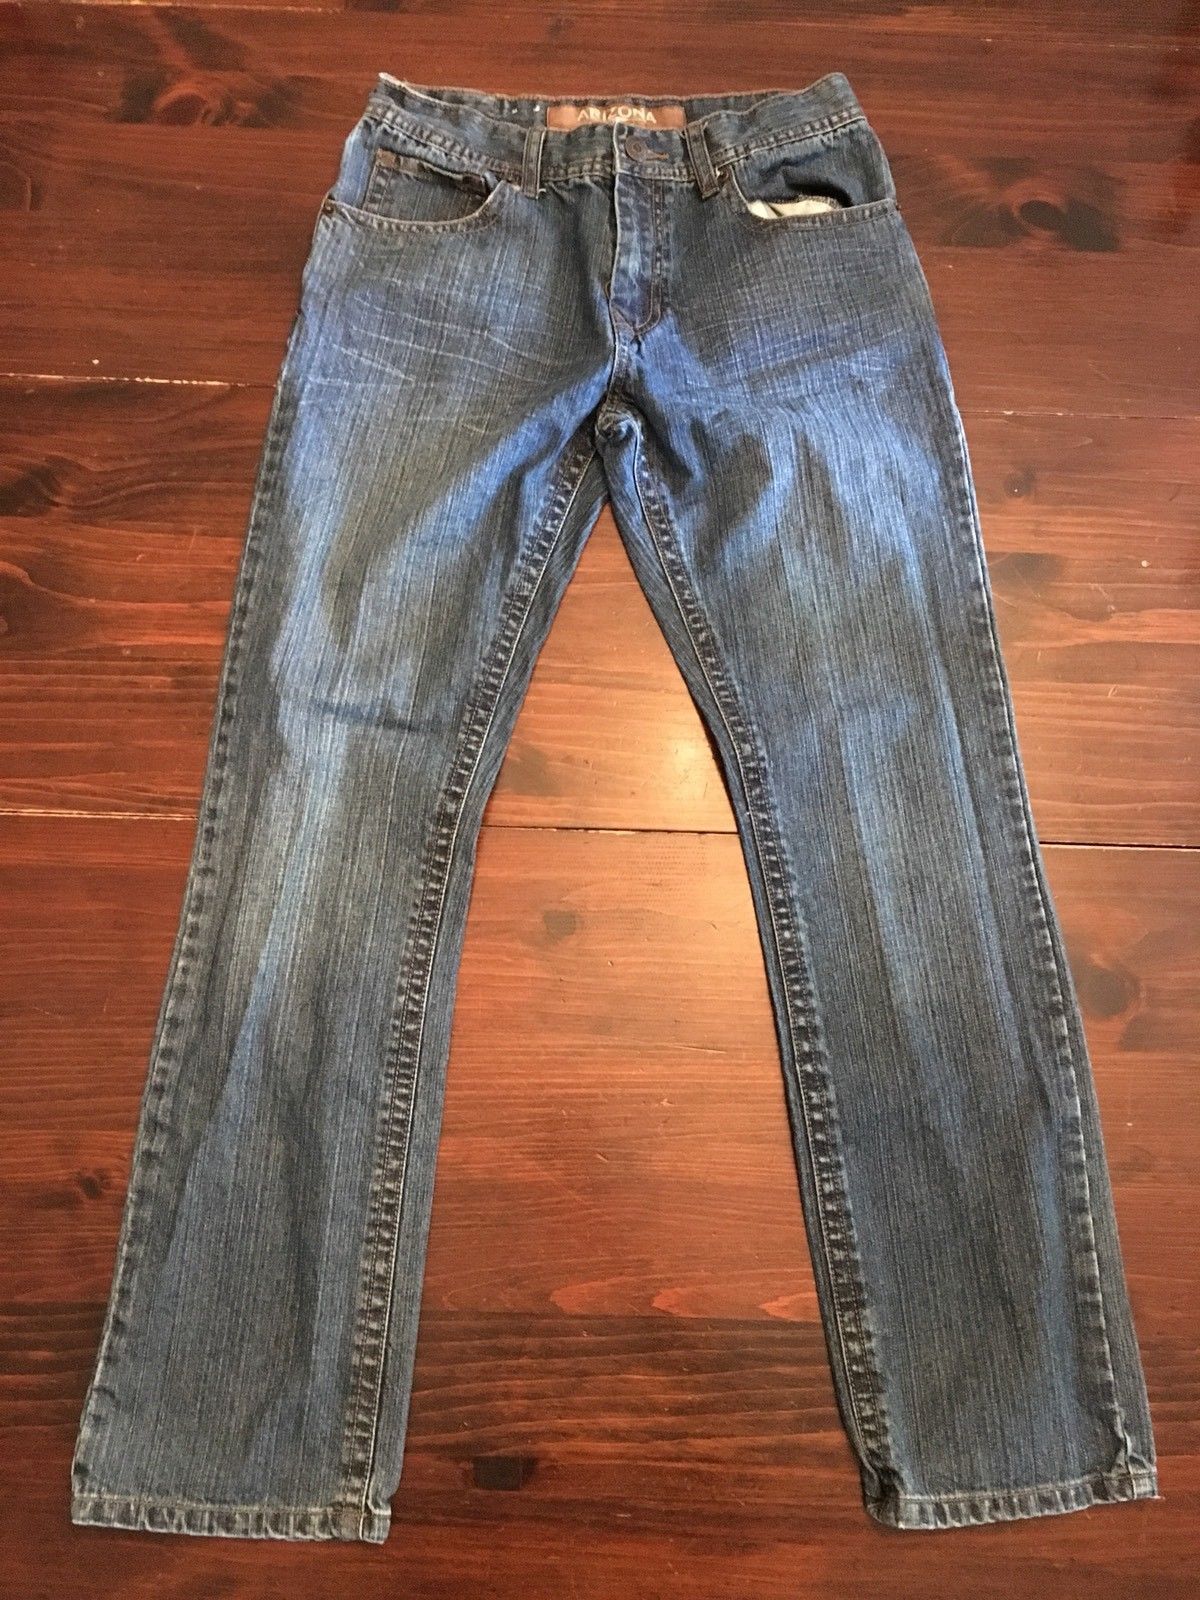 26 x 28 skinny jeans